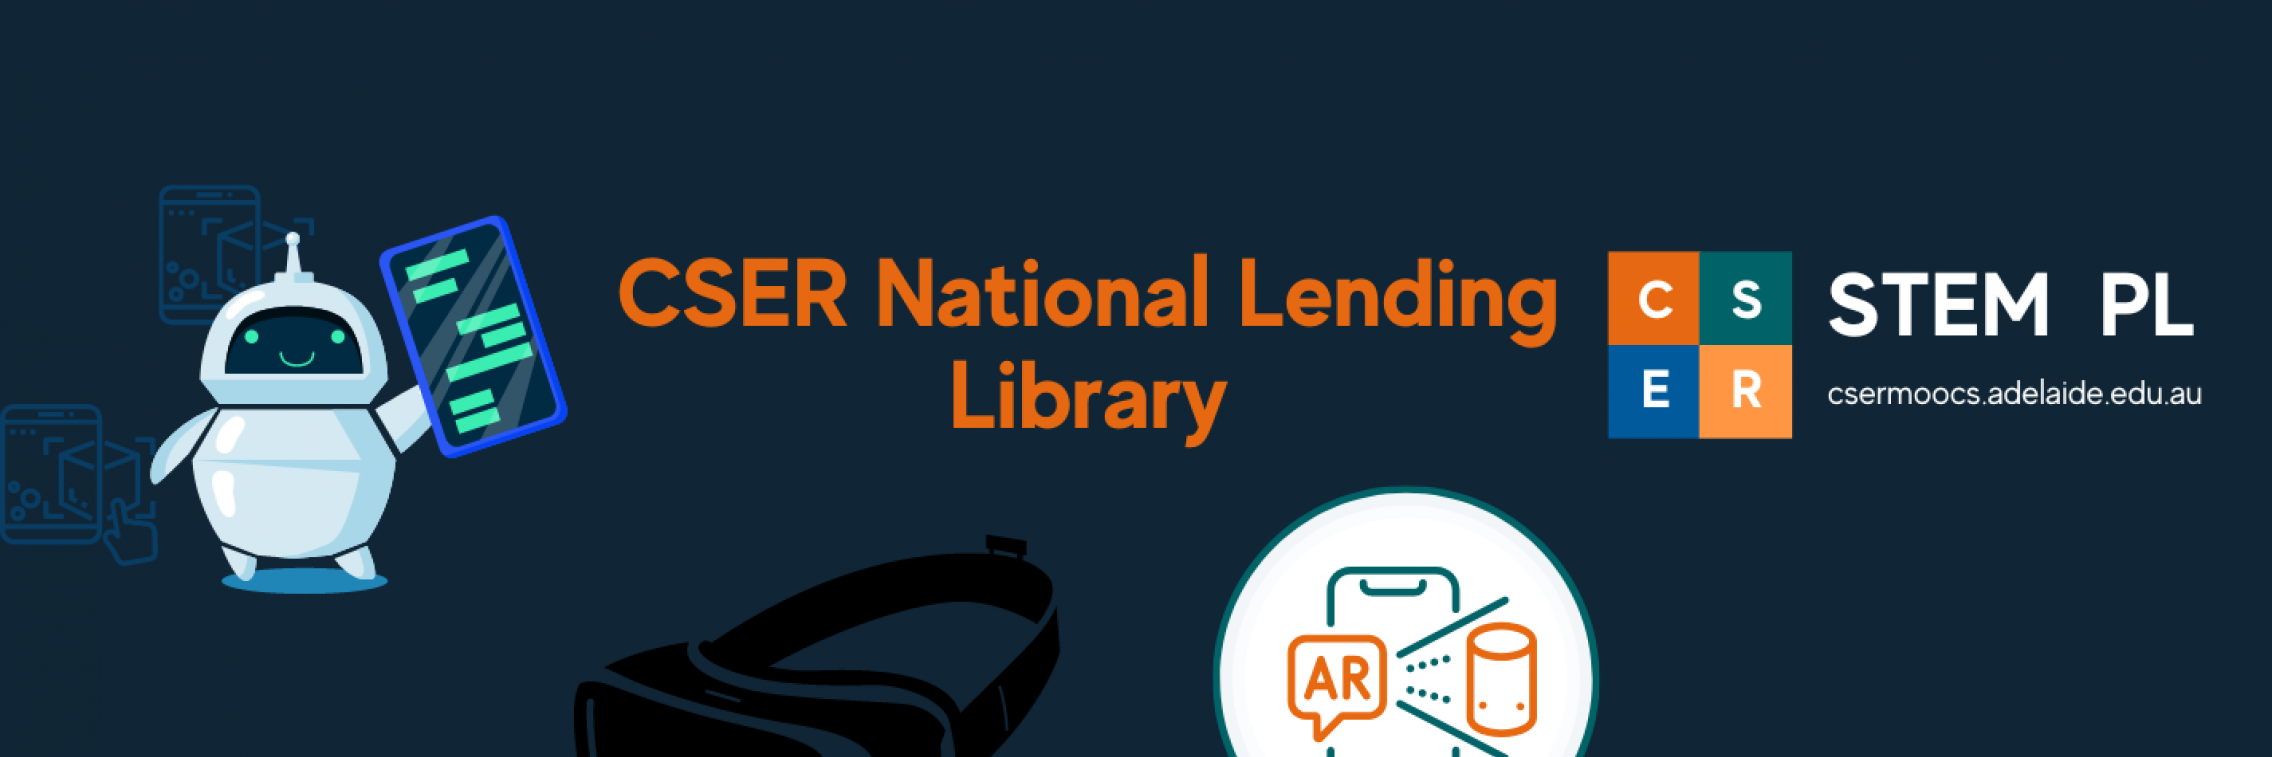 CSER National Lending Library